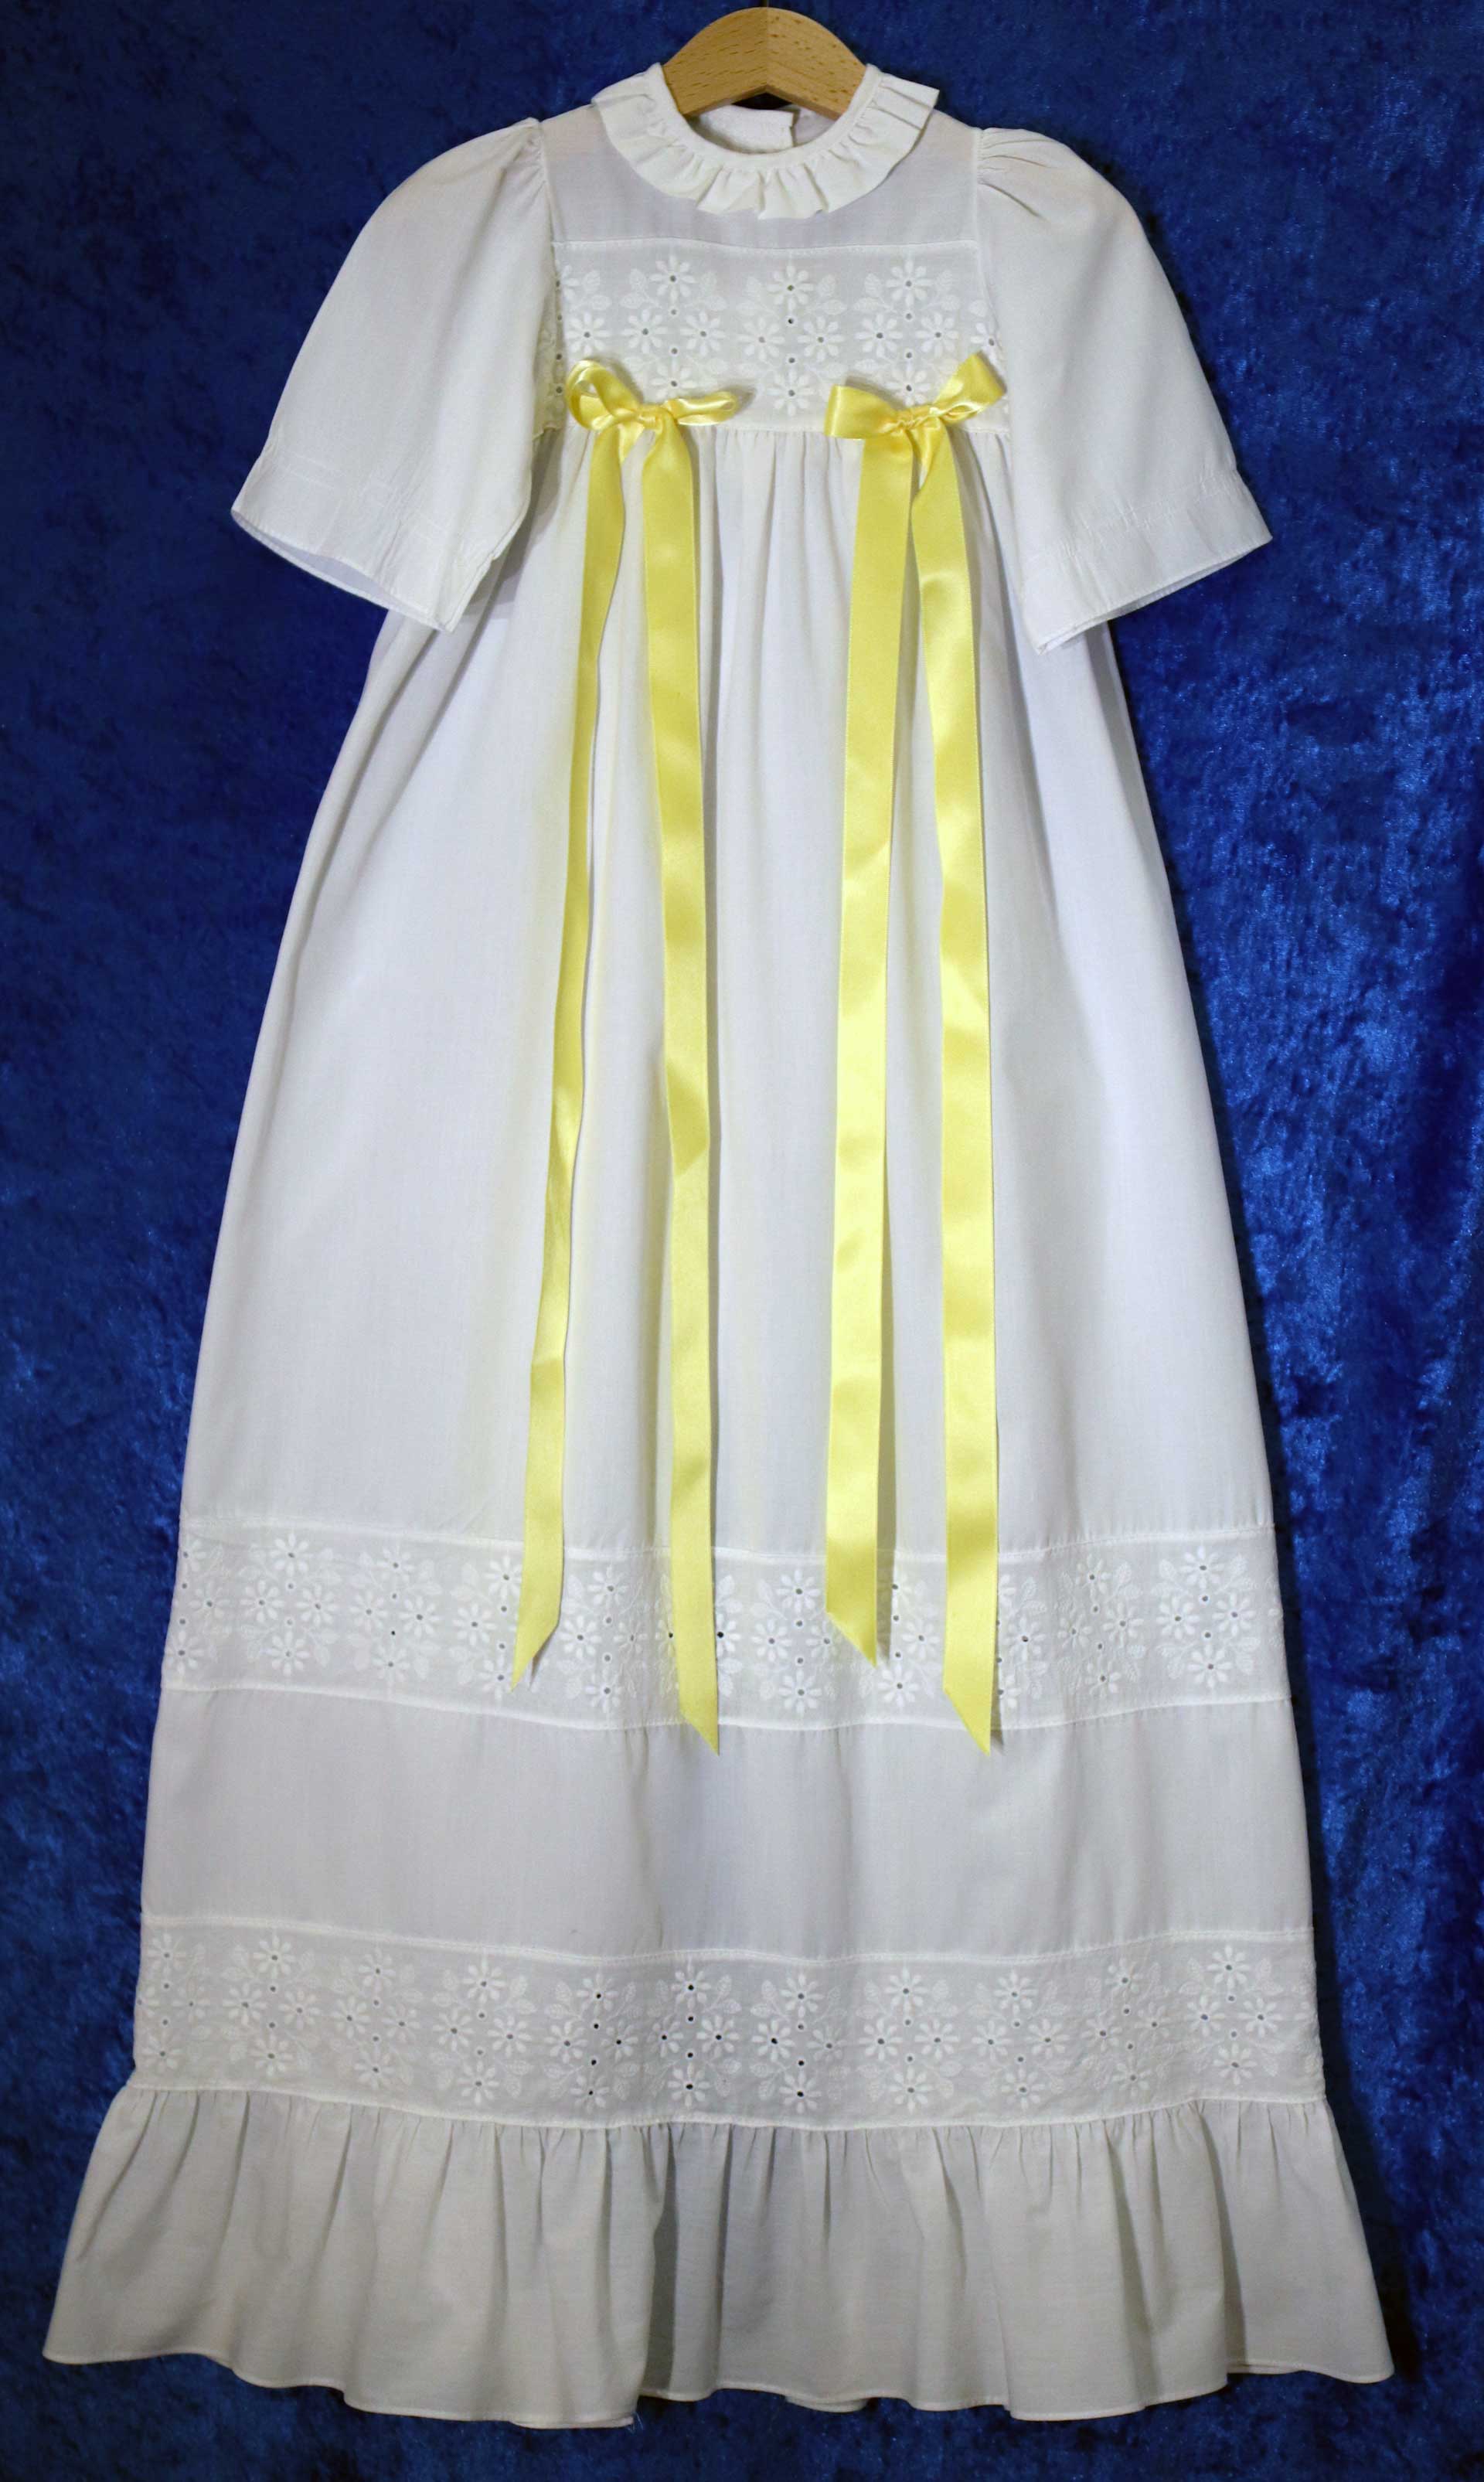 Dopklänning nr 1: Vit dopklänning. Det går att fästa band på klänningen, banden finns i gult, rosa och blått.